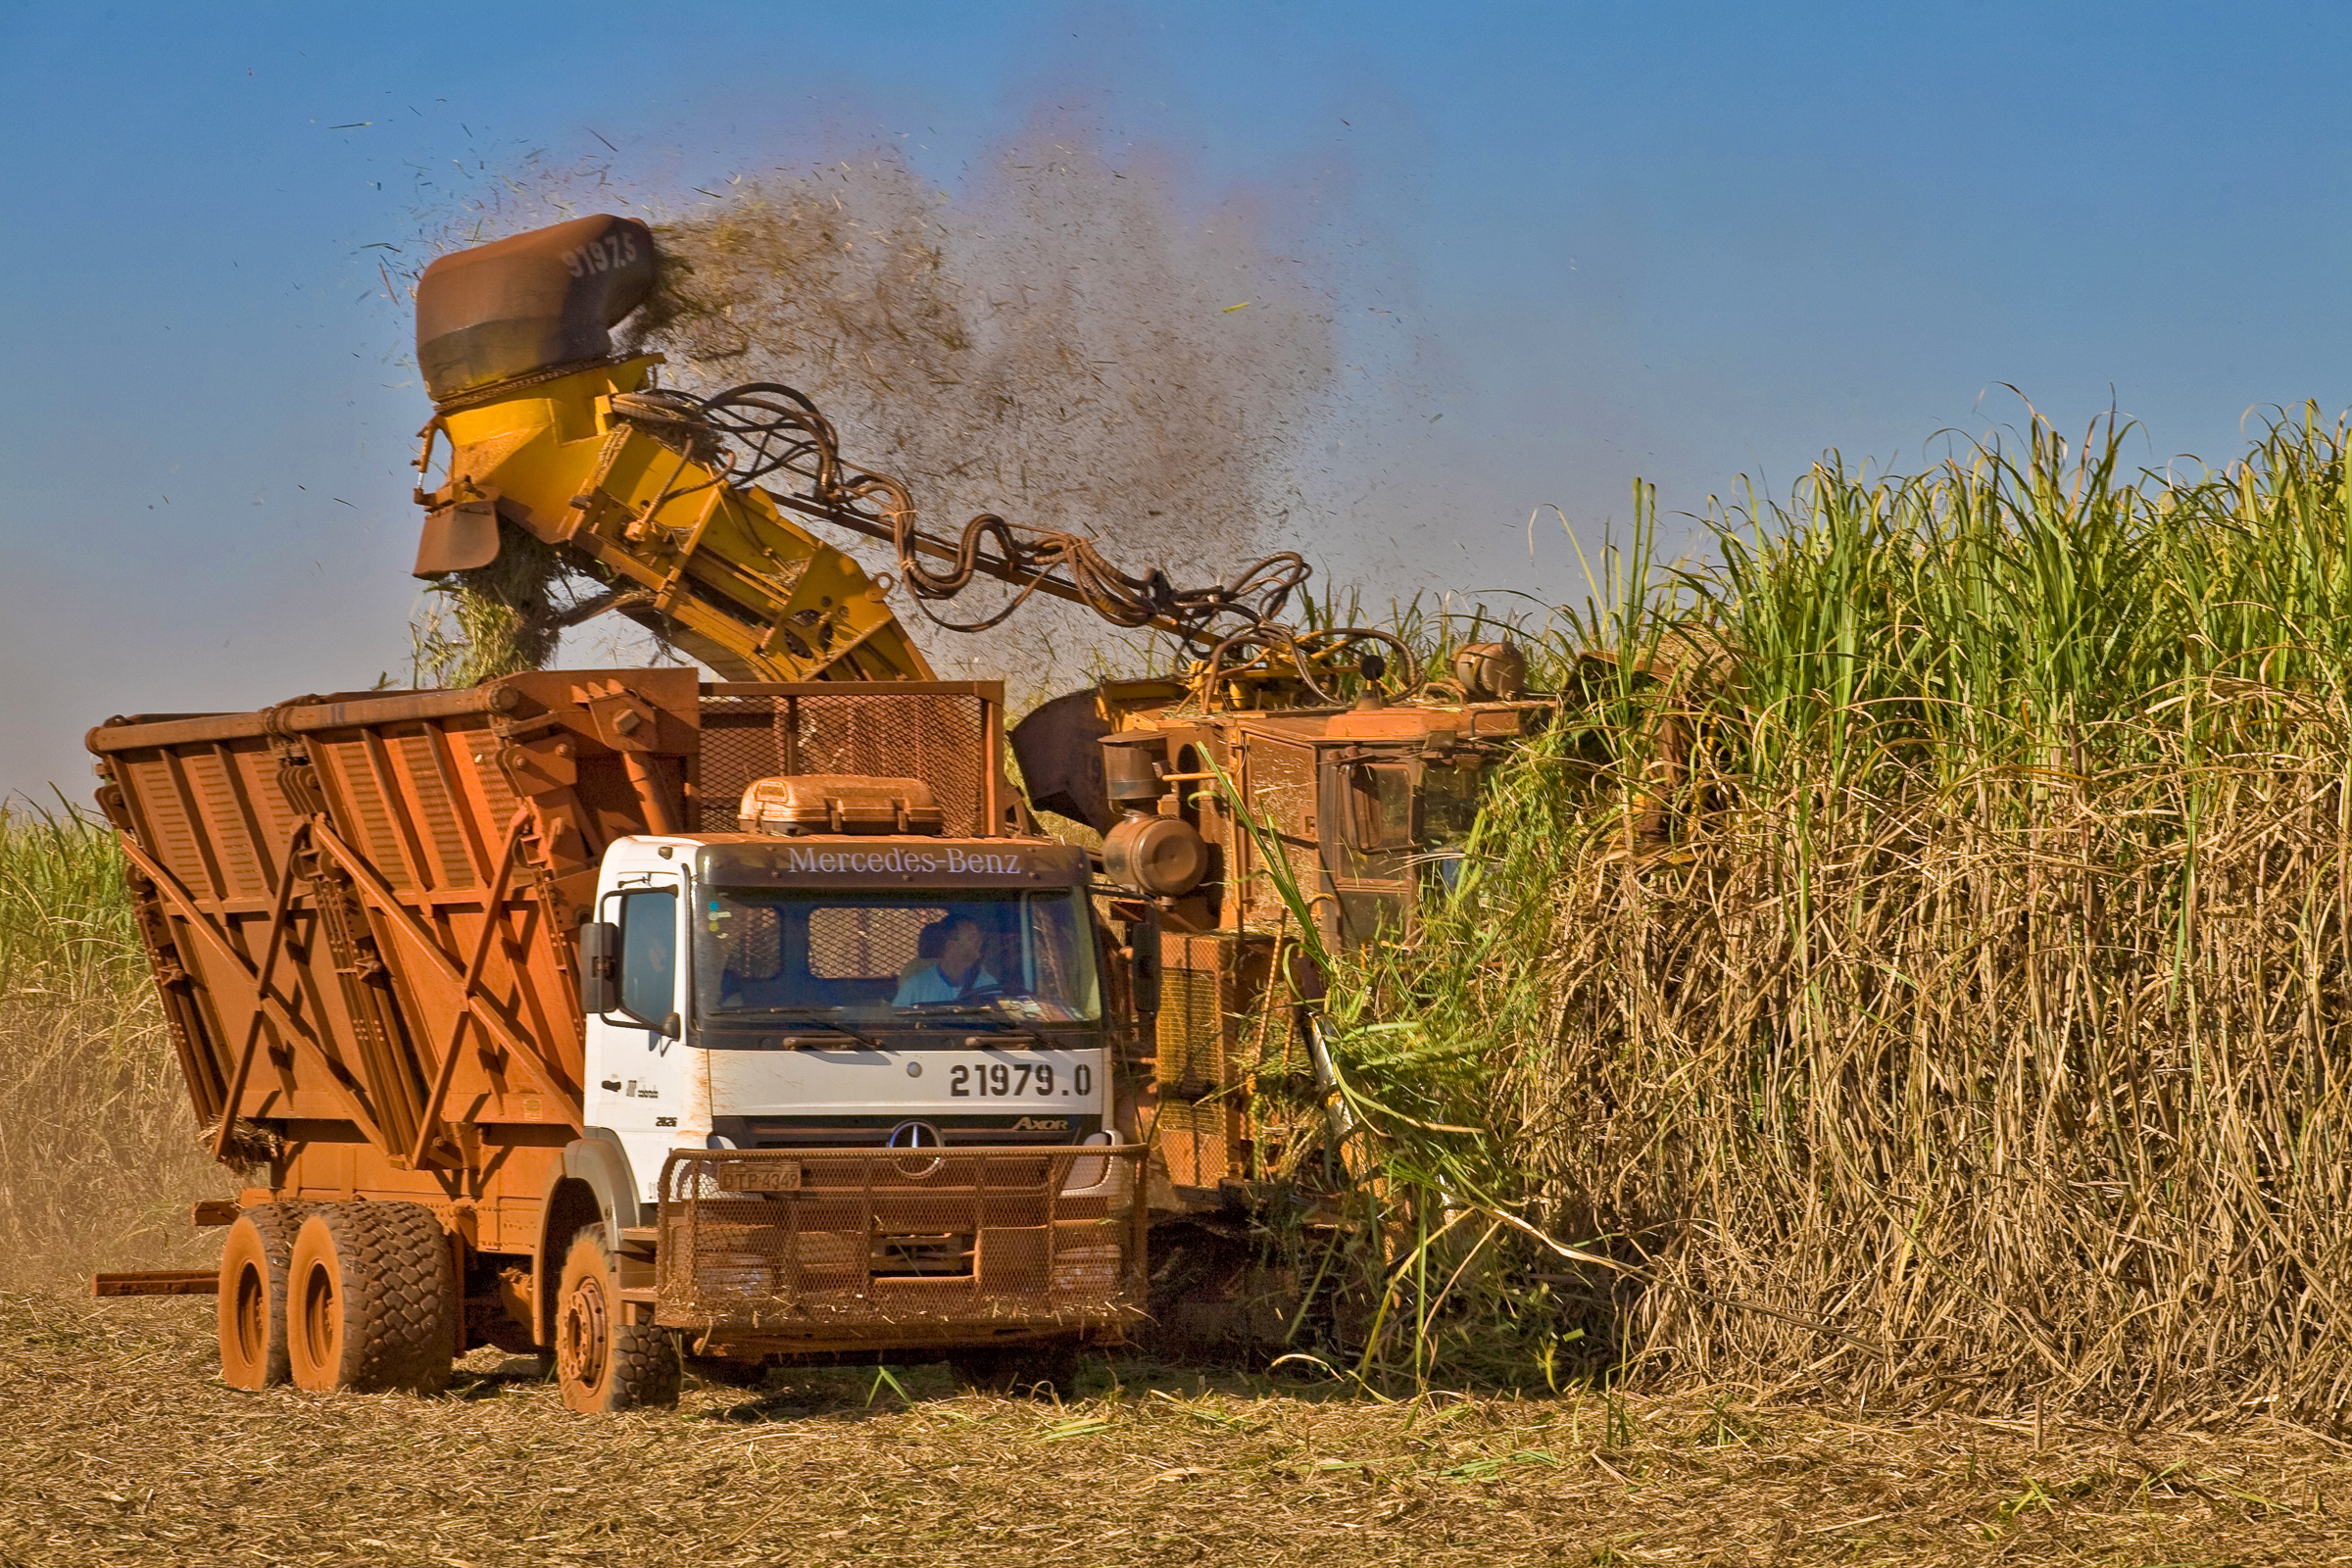 Sugarcane harvest for the second half of November 2020